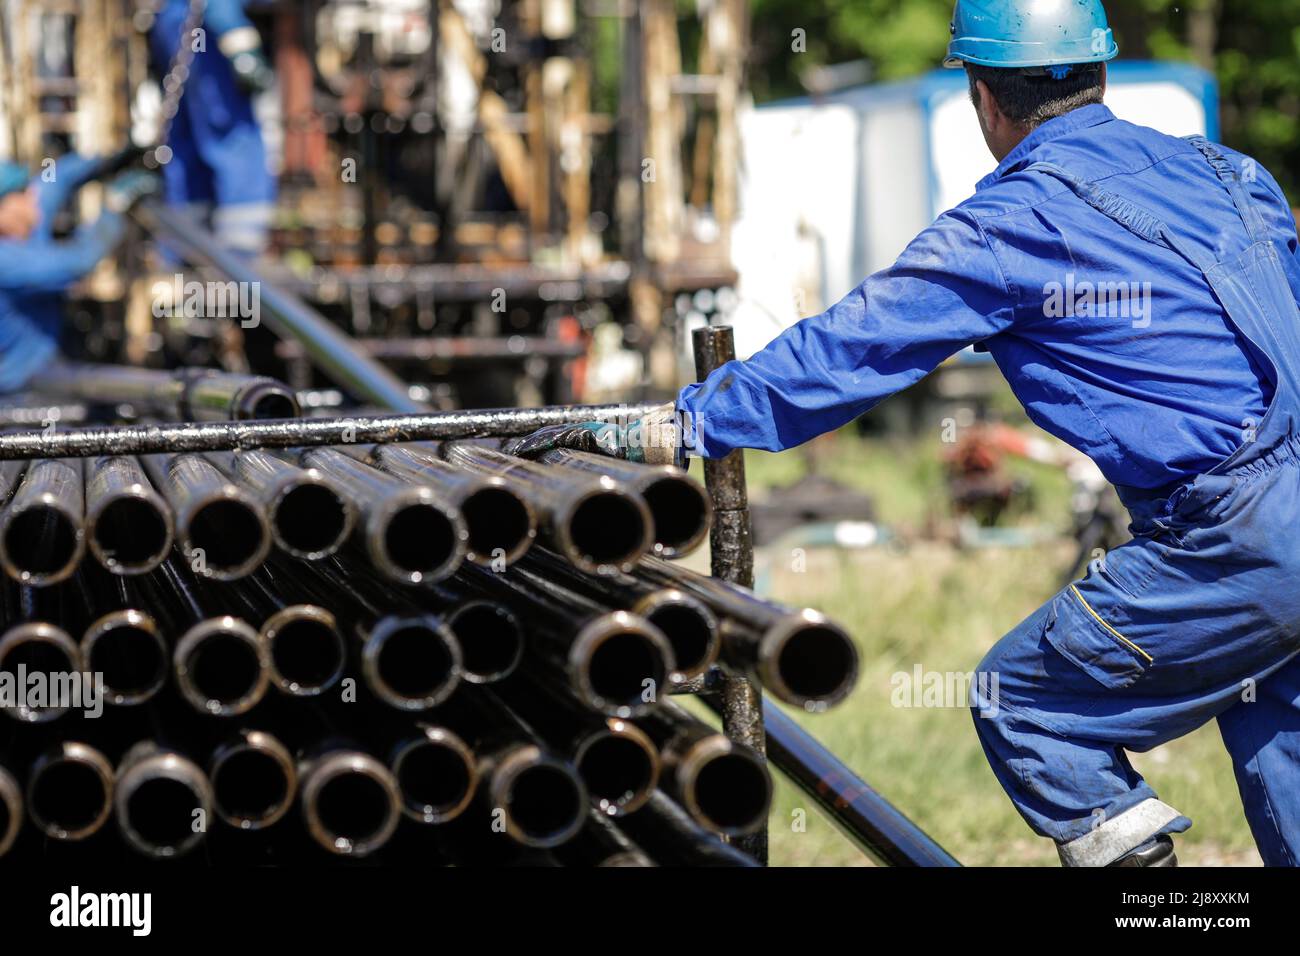 Mitarbeiter der Öl- und Gasindustrie betreibt Bohrrohre für Bohrinseln auf einer Bohrinsel. Stockfoto